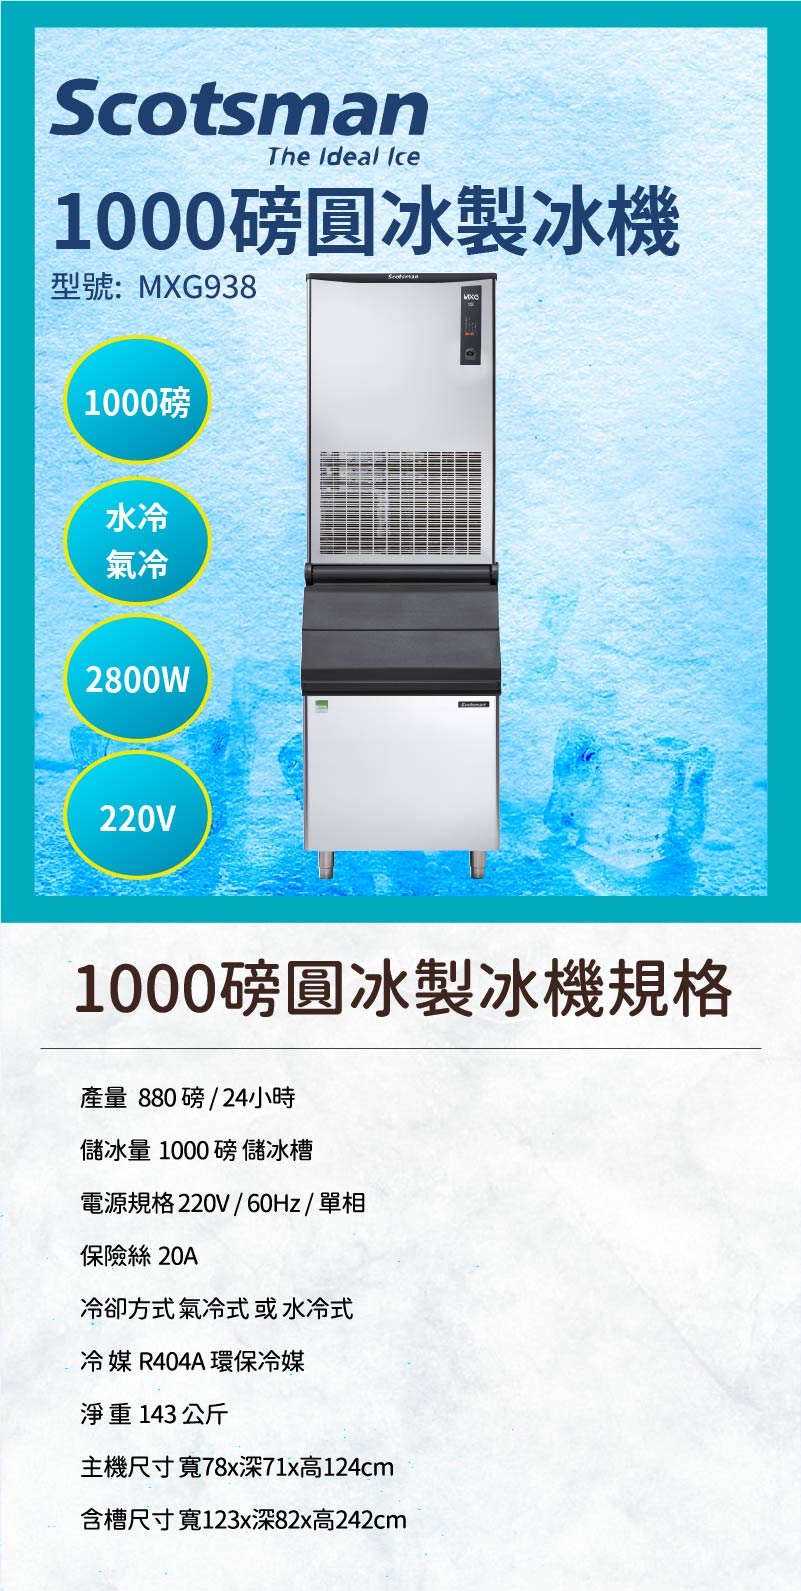 1000磅圓冰製冰機